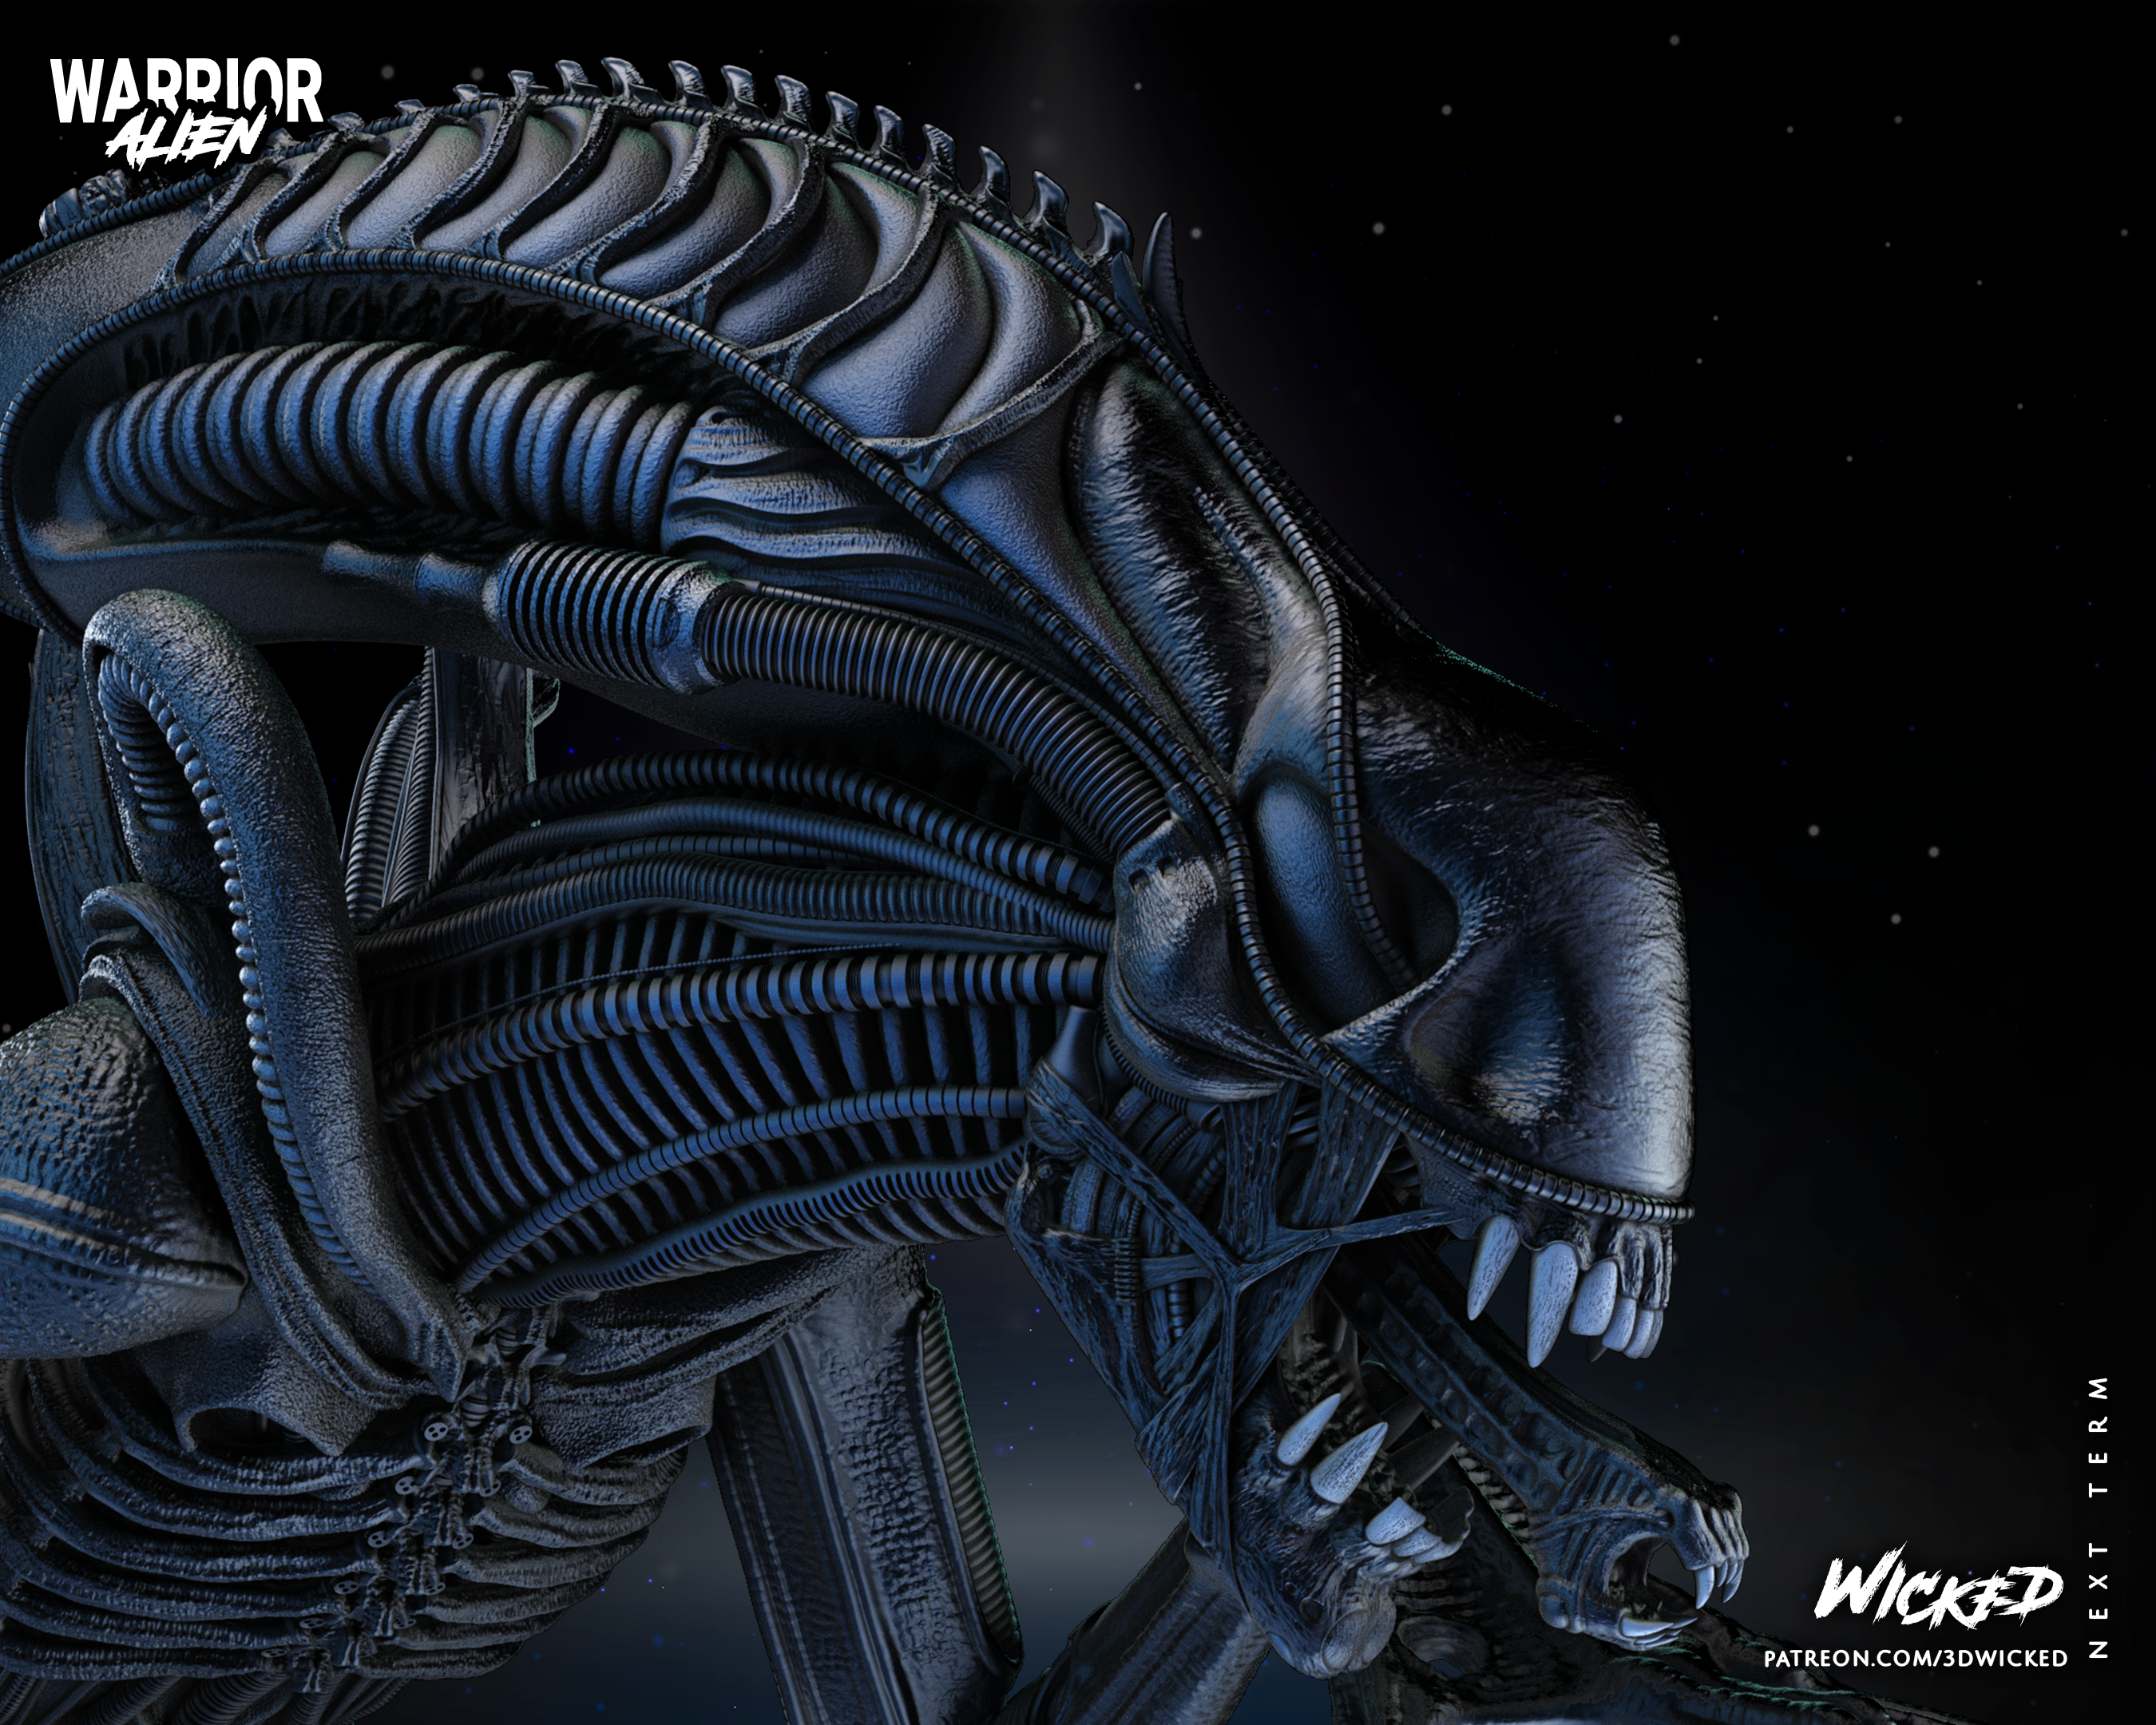 3D printed Alien Warrior Sculpture - 188mm to 377mm (1/6 Scale) Fan Art